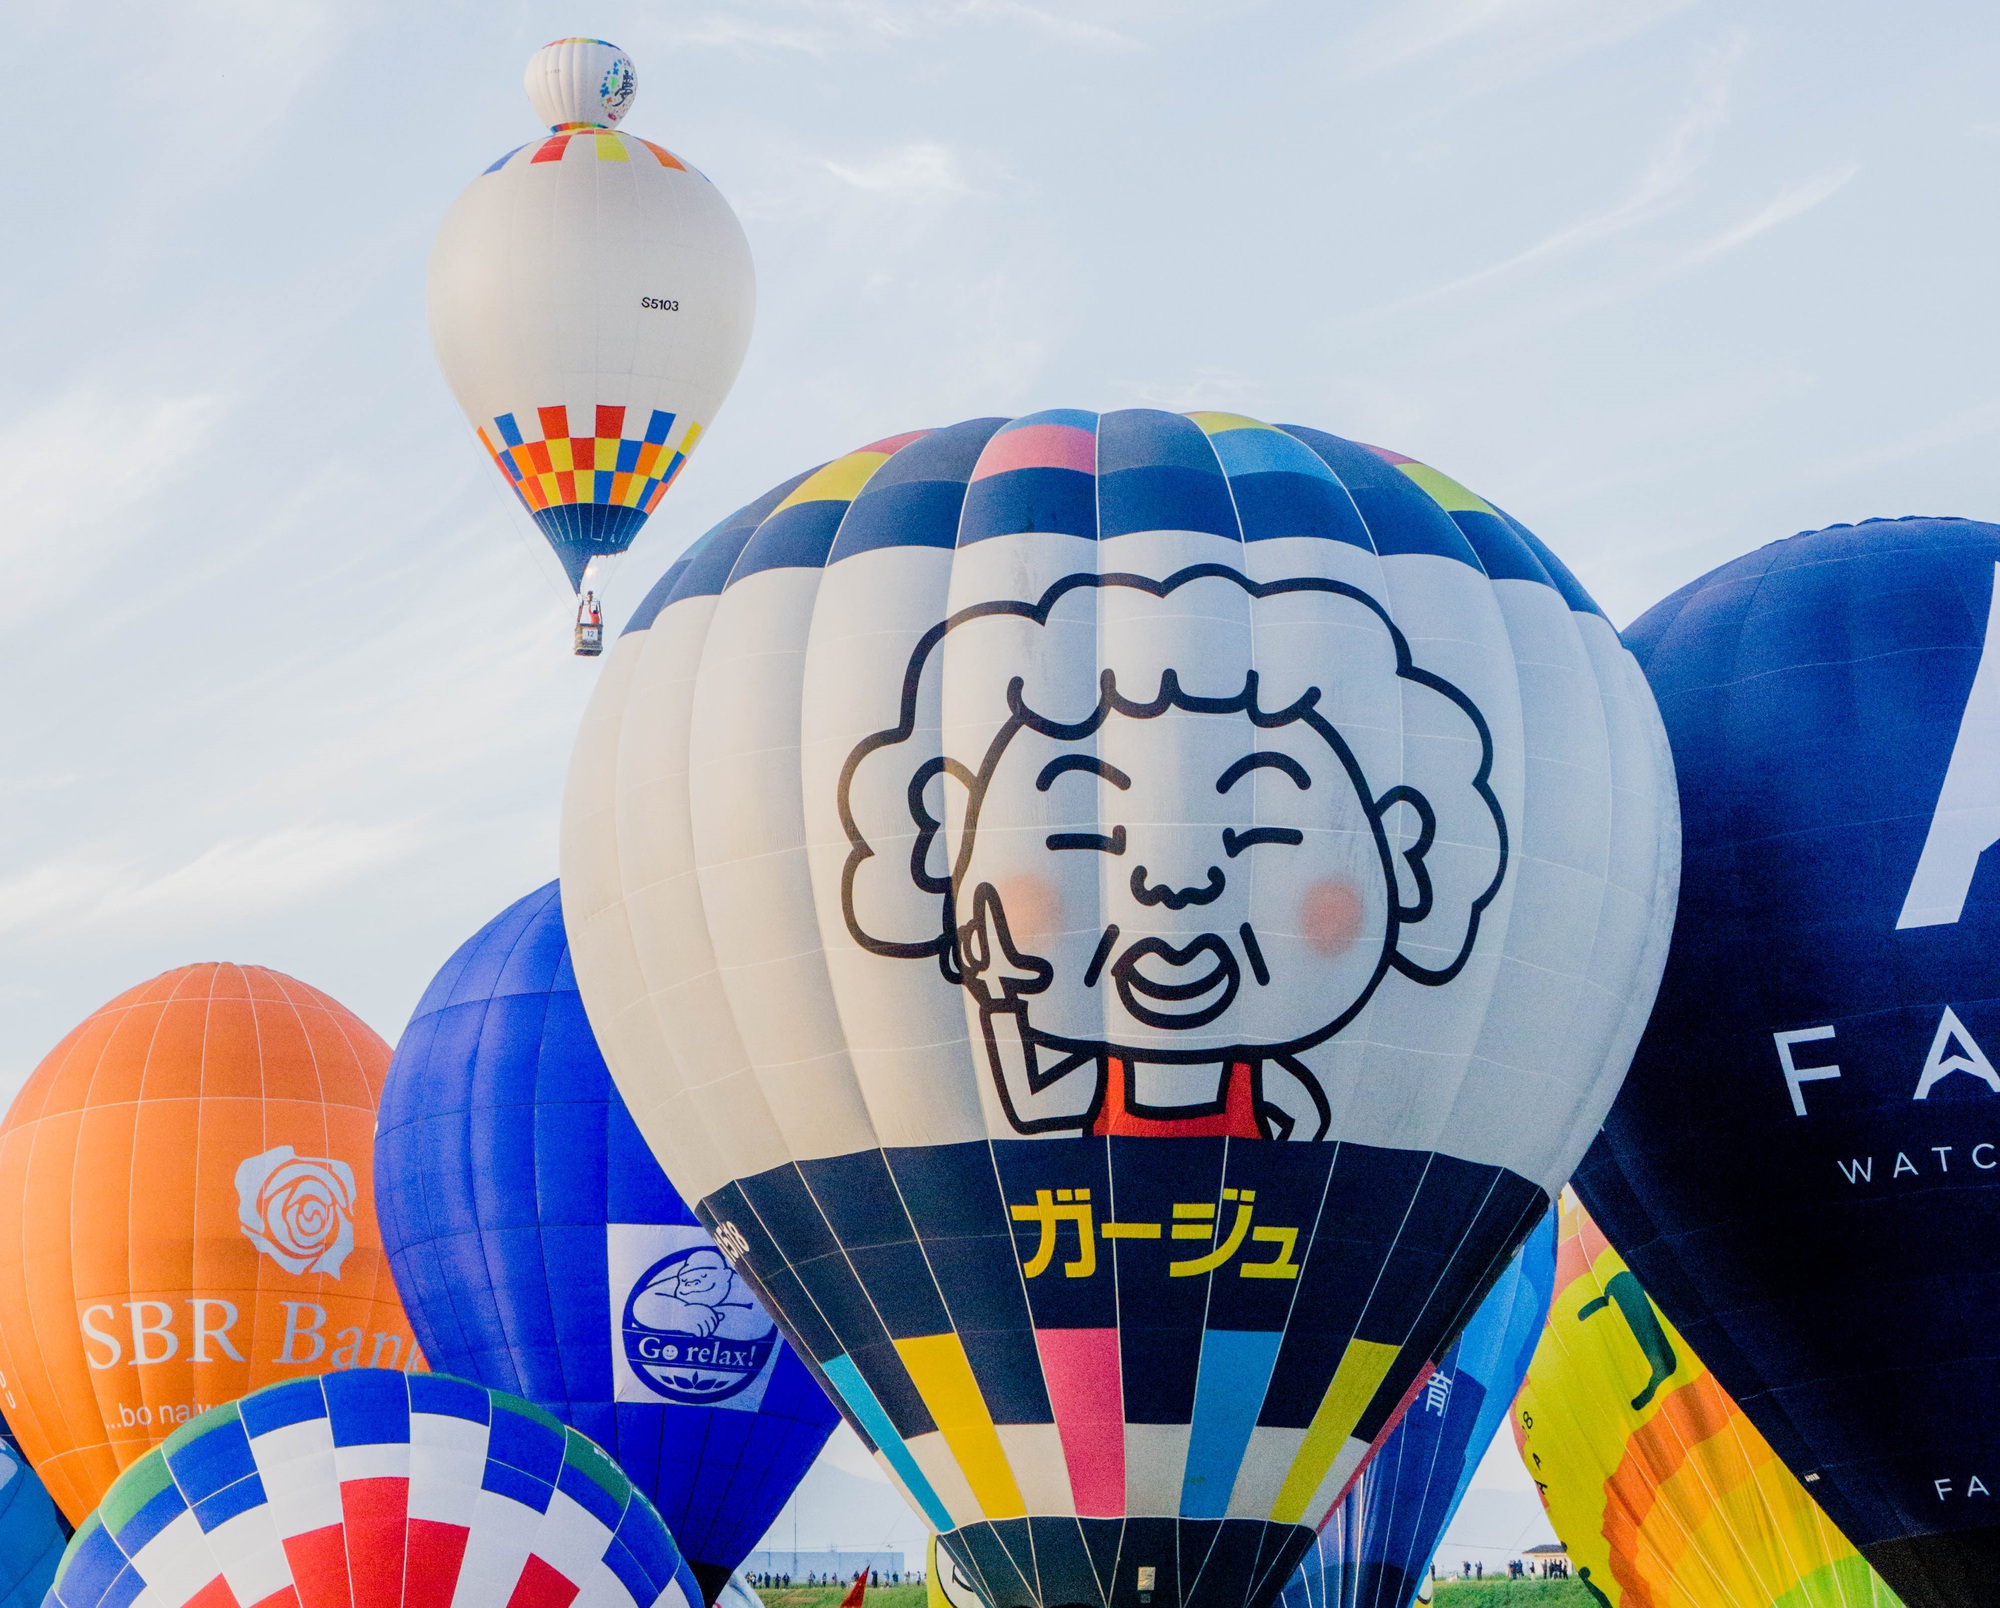 Lễ hội khinh khí cầu quy mô “khủng” thu hút triệu khách du lịch mỗi năm - Ảnh 3.